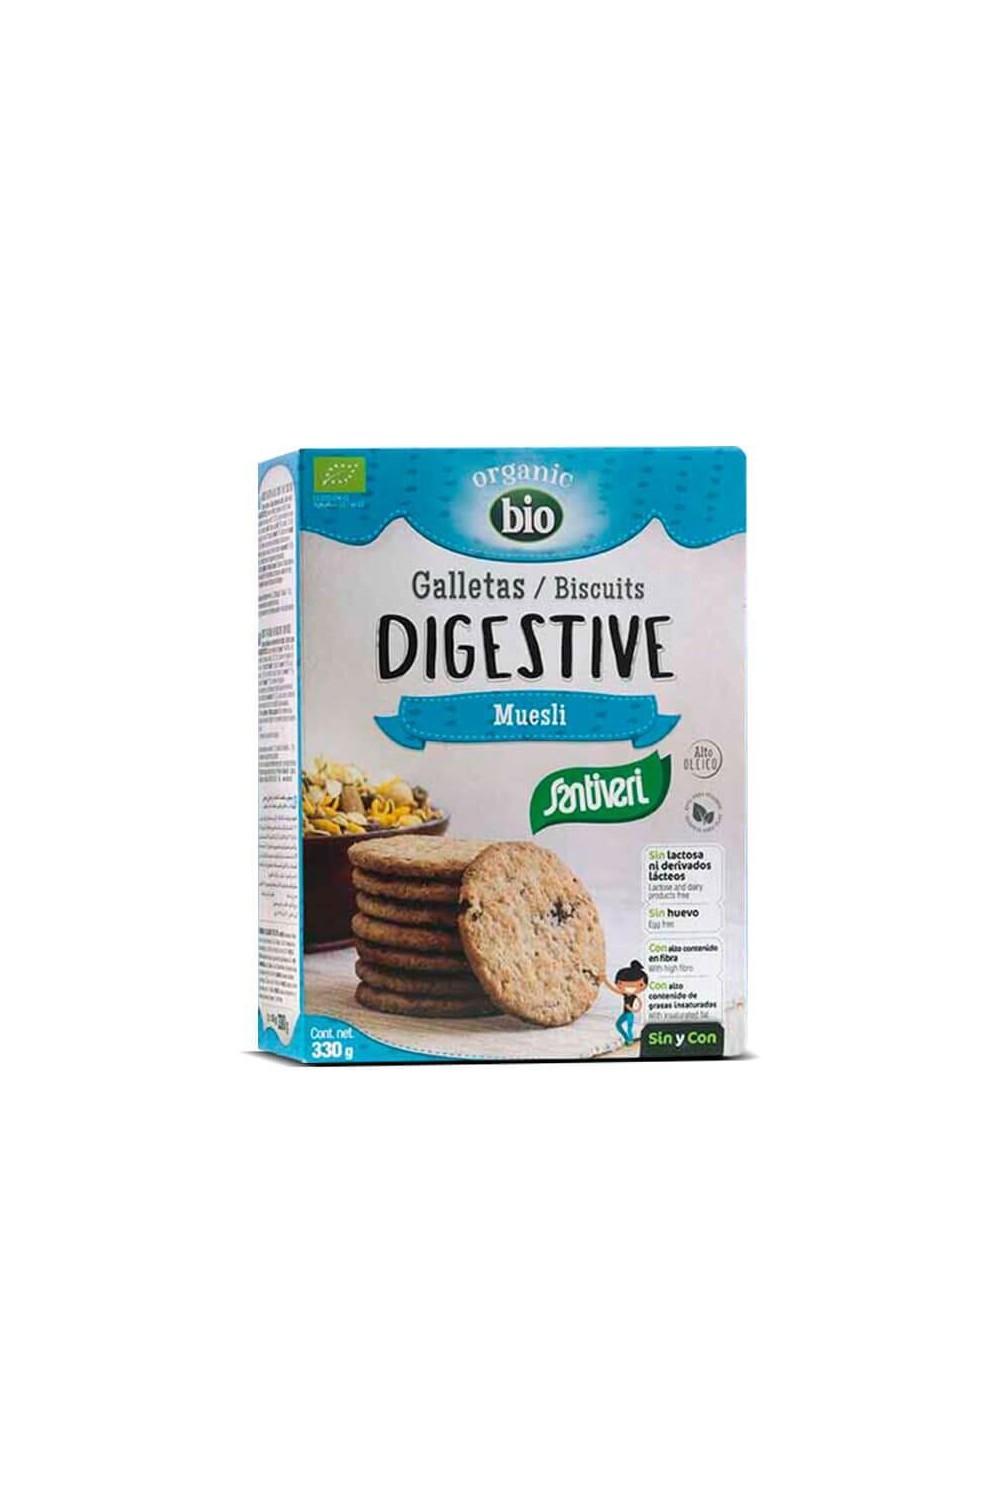 Santiveri Digestive Muesli Bio Biscuits 330g